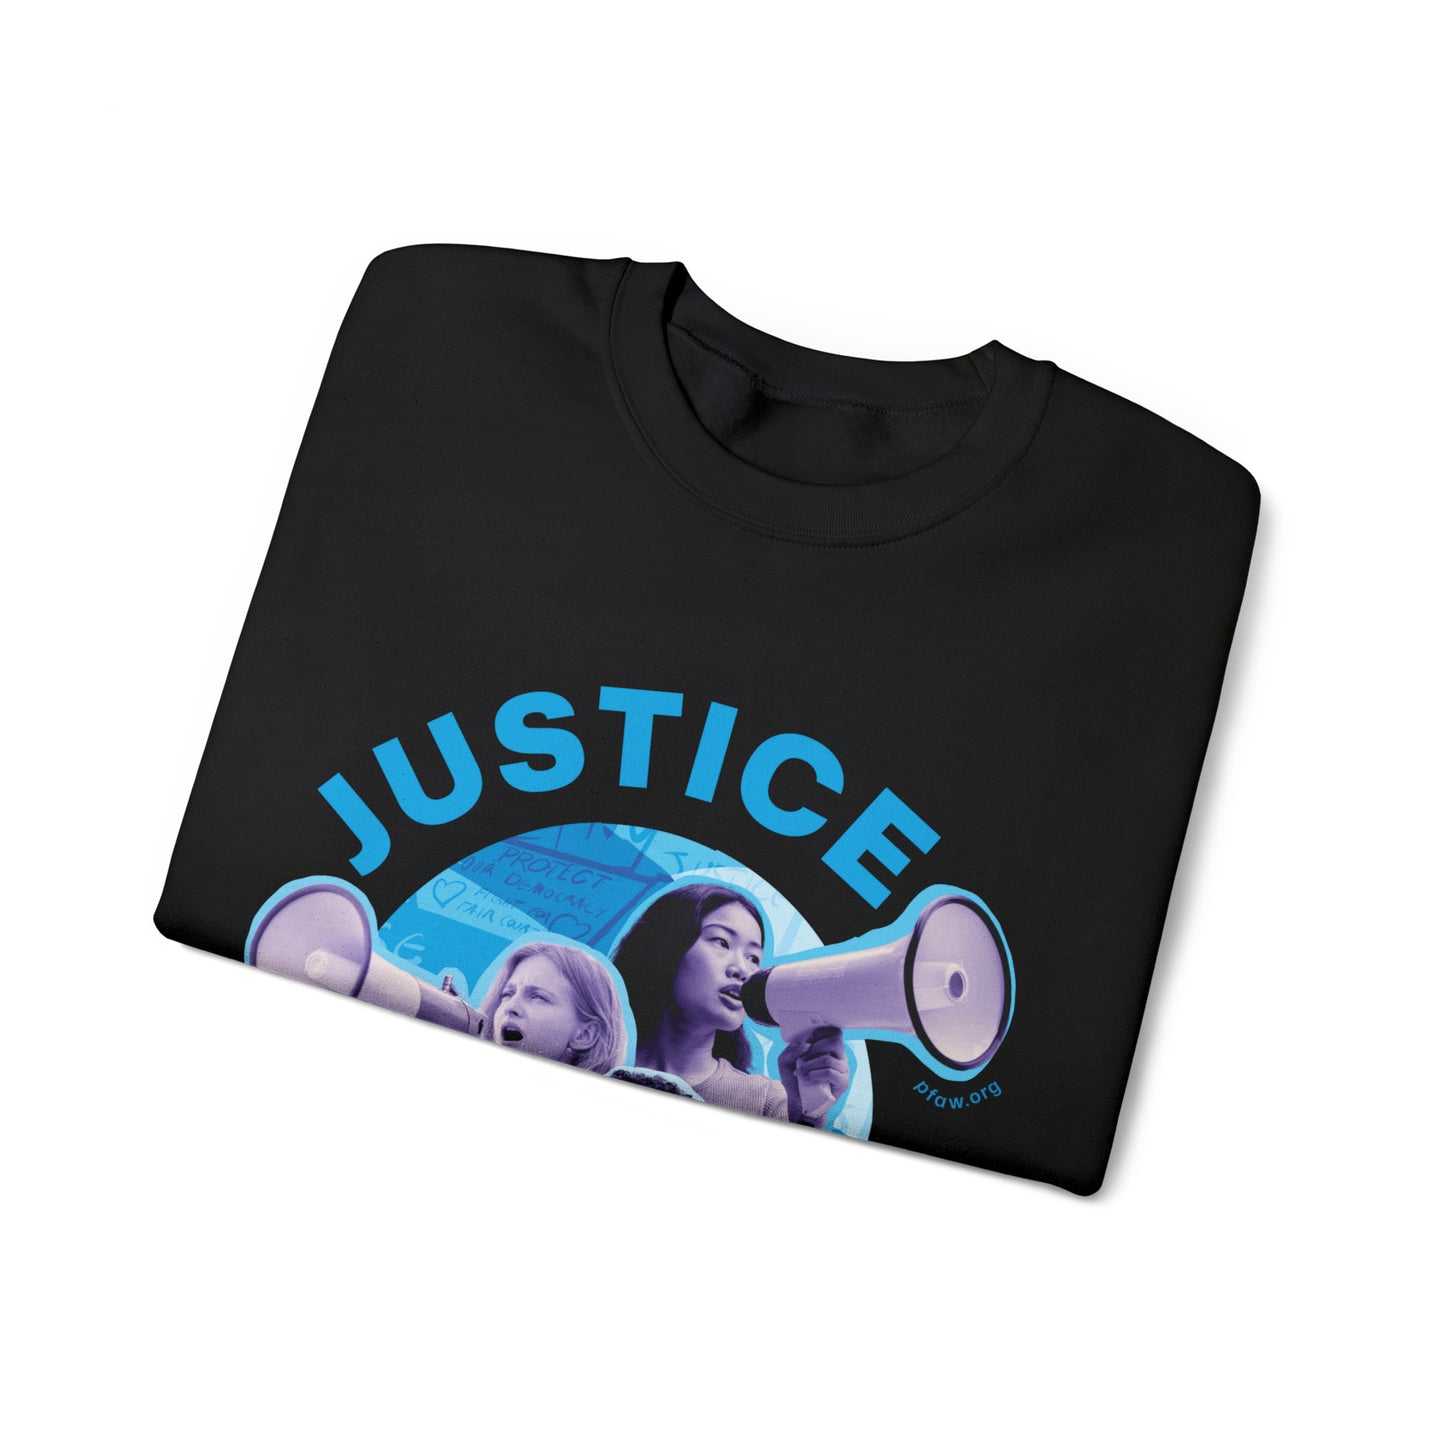 Justice is the American Way Crewneck Sweatshirt